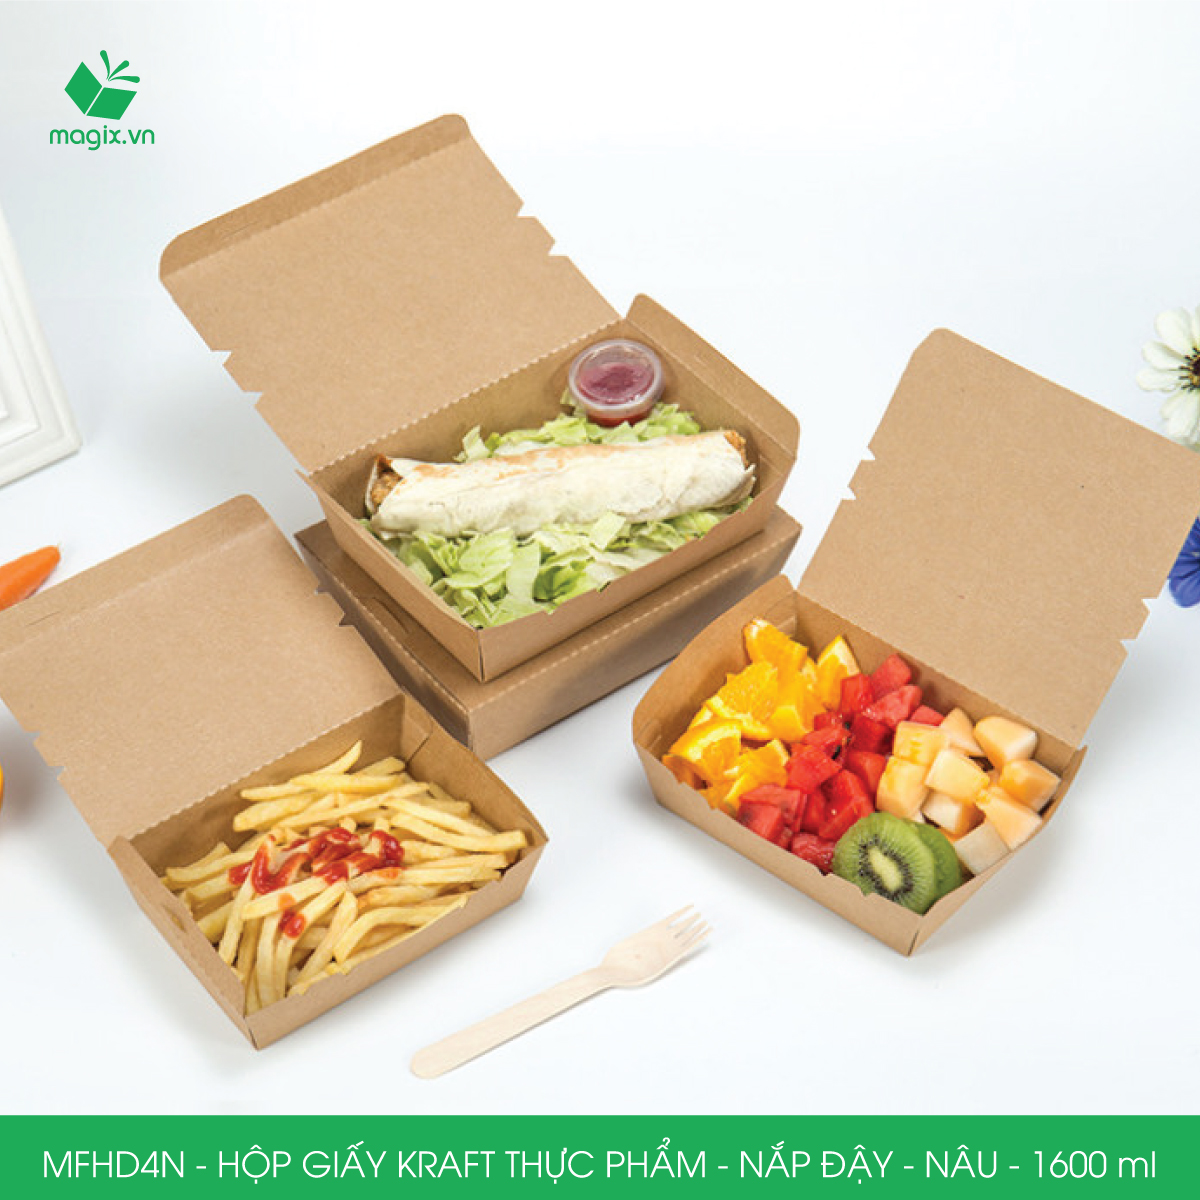 MFHD4N - Combo 100 hộp giấy kraft thực phẩm 1600ml, hộp đựng thức ăn nắp đậy màu nâu, hộp gói đồ ăn mang đi